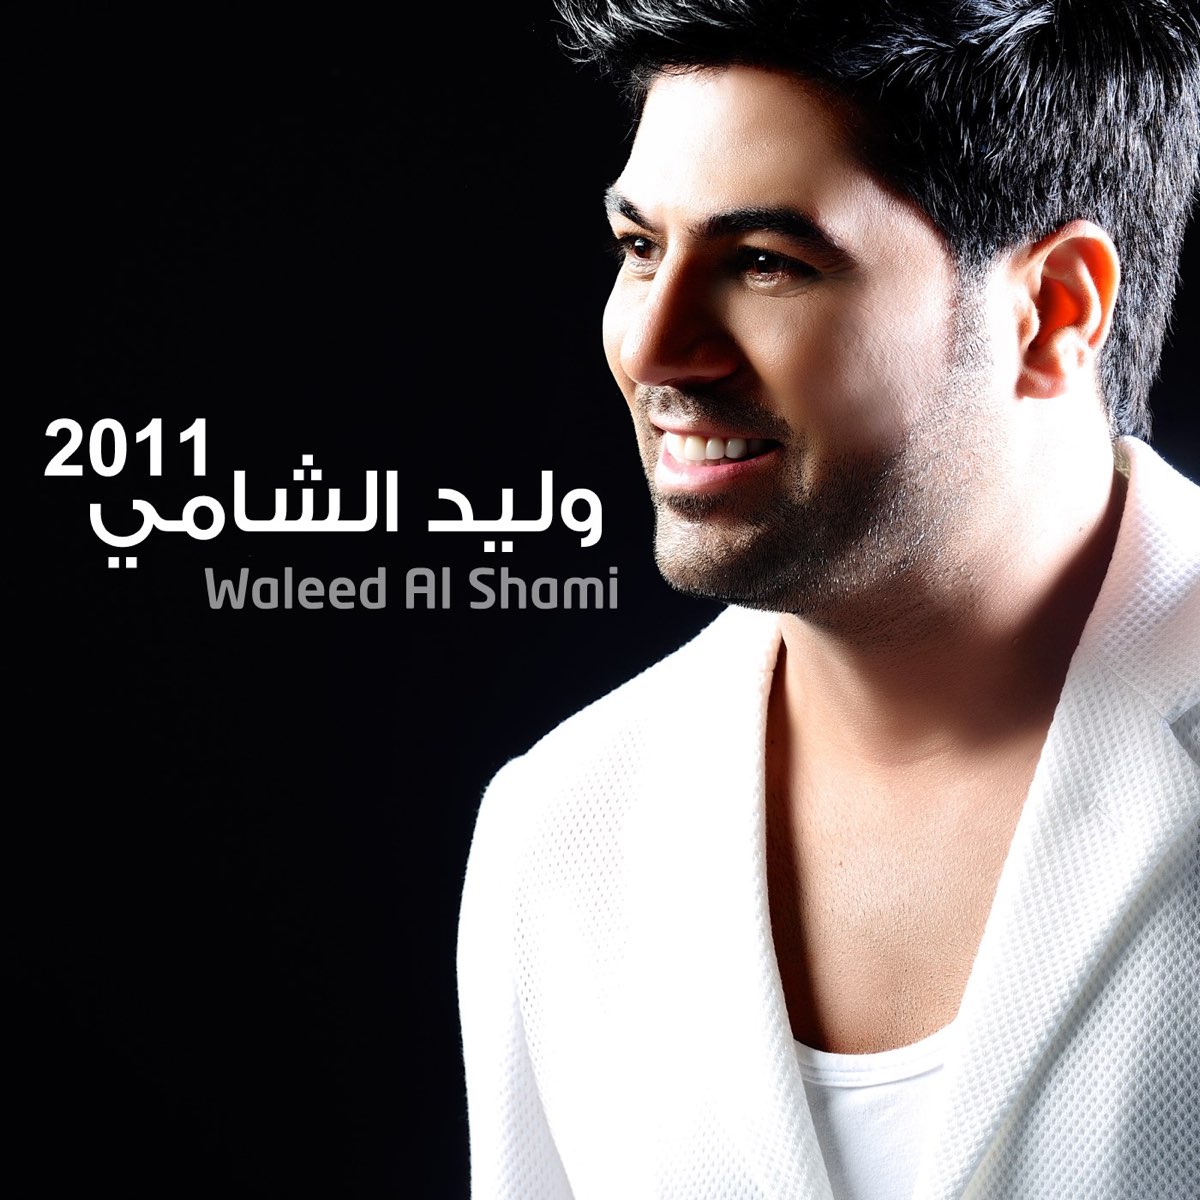 Al Shami. Шами 2011. Waleed al Shami. Shami album.